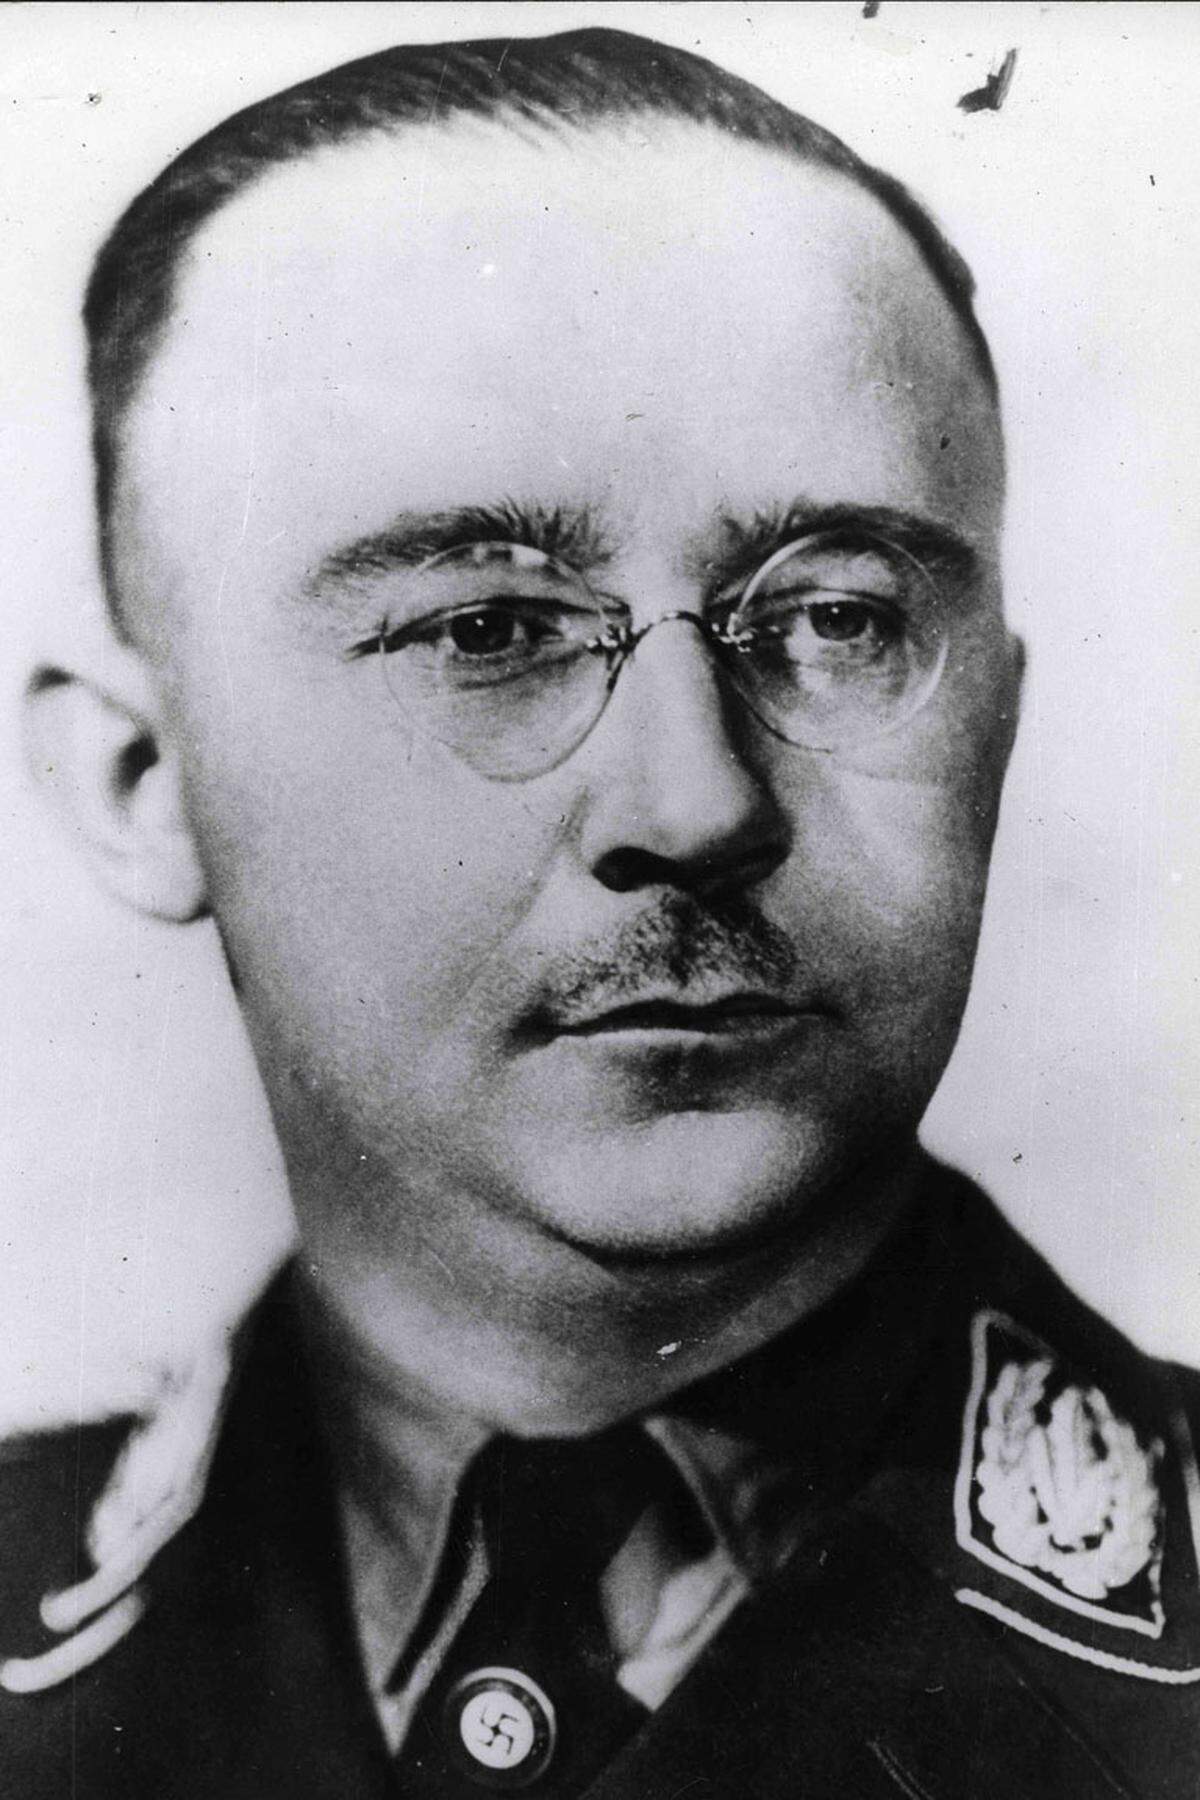 Kurz vor Kriegsende wurde der "Reichsführer-SS" noch entmachtet - Hitler hatte von seinen Versuchen erfahren, mit den Westalliierten zu verhandeln. Auch Himmlers Versuch, an der Dönitz-Regierung teilzunehmen, scheiterte. Am 20. Mai 1945 geriet er mit gefälschten Papieren in eine britische Militärpolizeikontrolle. Drei Tage später brachte er sich in einem Verhörzimmer mit einer in einer Zahnlücke versteckten Zyankalikapsel um. Sein Leichnam wurde an unbekannter Stelle in der Lüneburger Heide begraben.